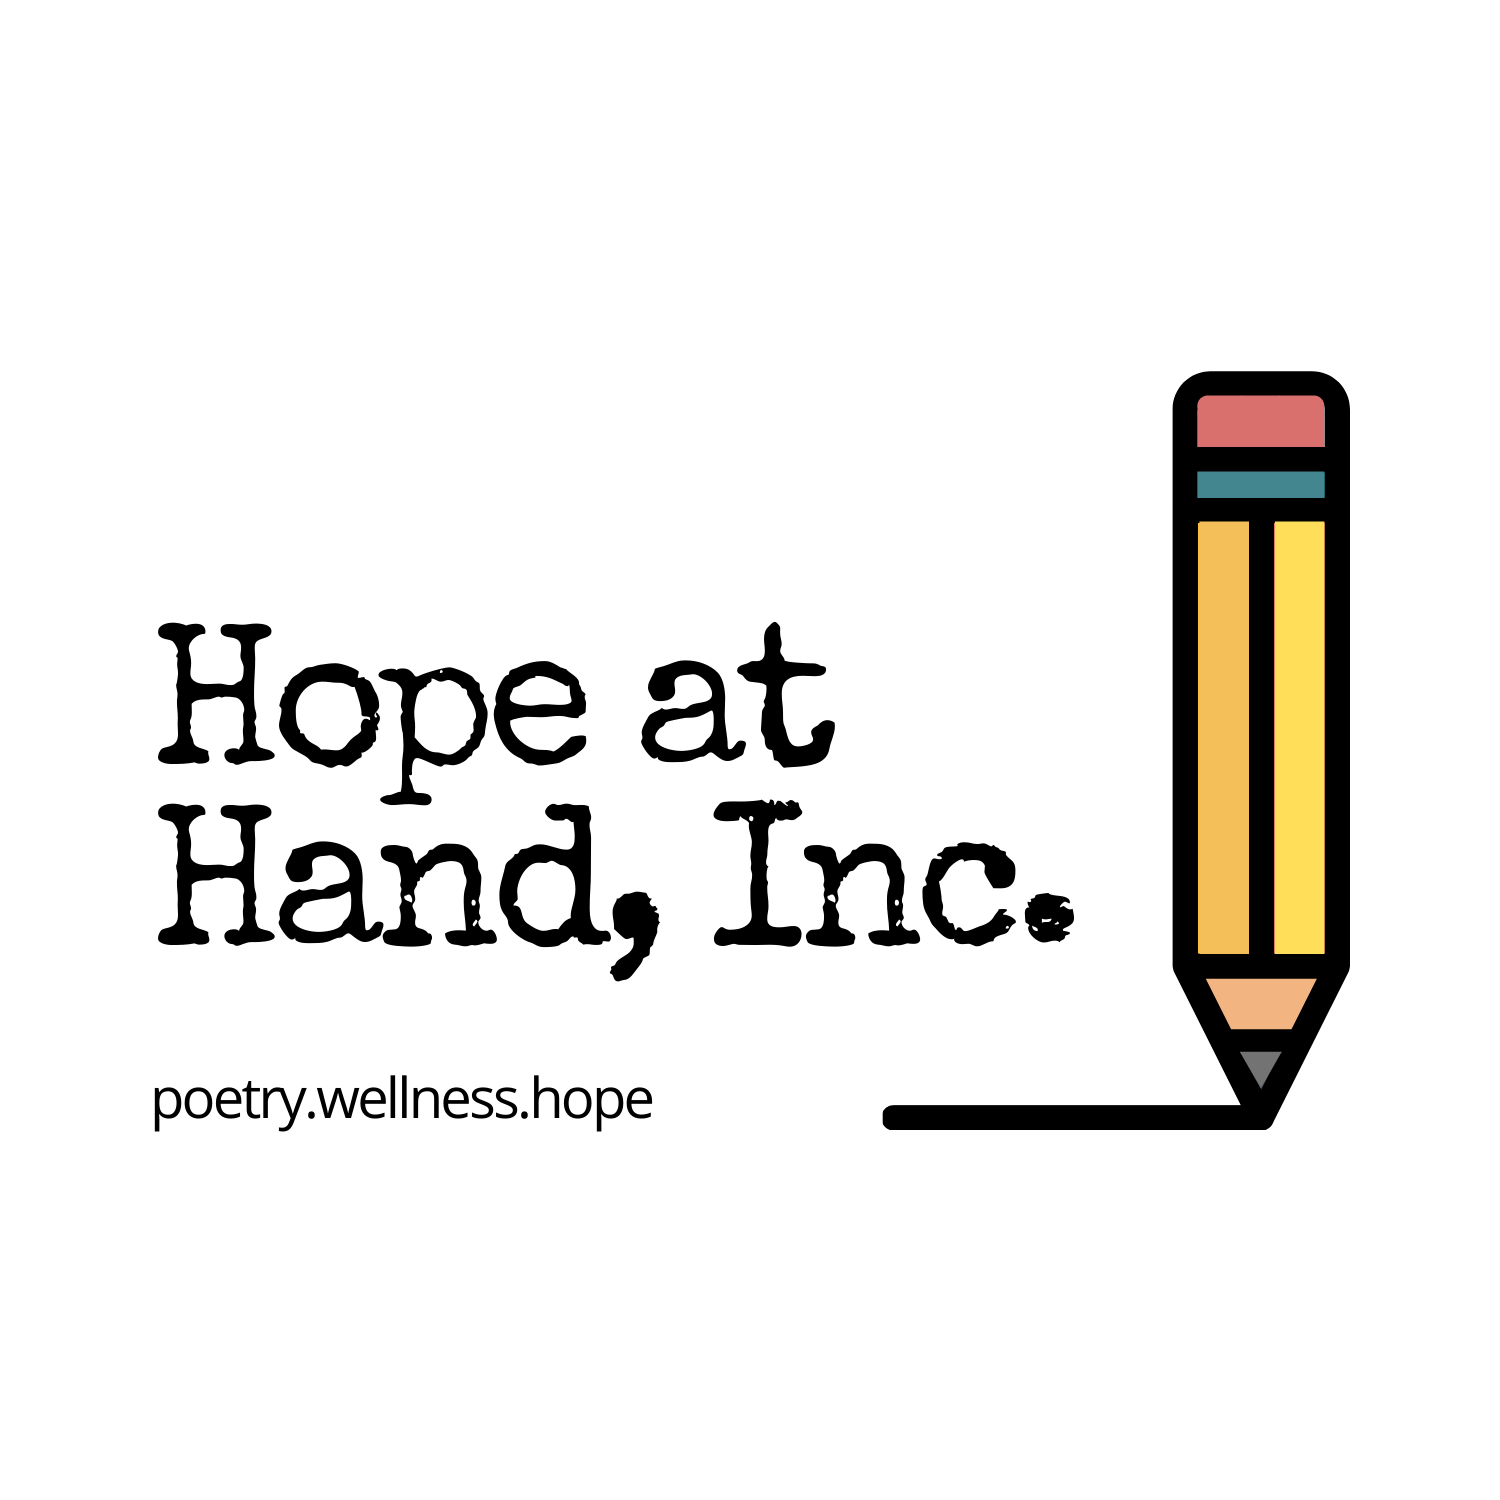 Hope at Hand, Inc.